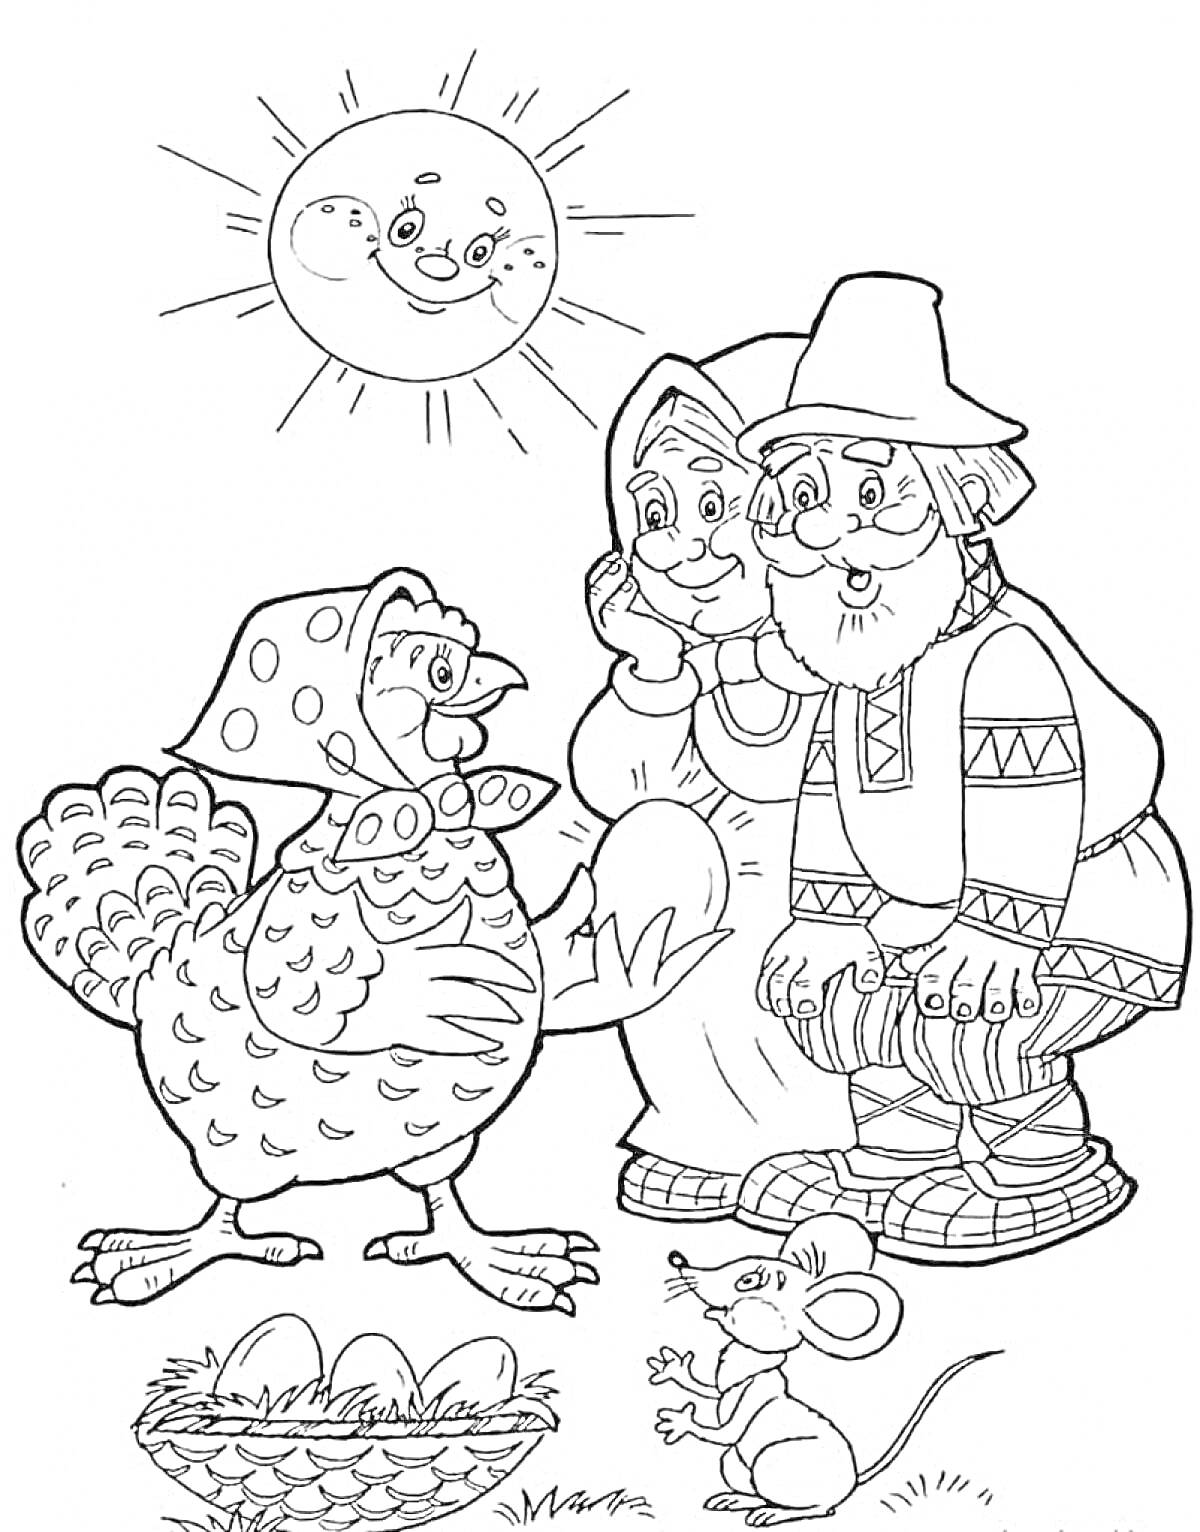 Раскраска Курочка с дедушкой и бабушкой, мышка, гнездо с яйцами, улыбающееся солнце